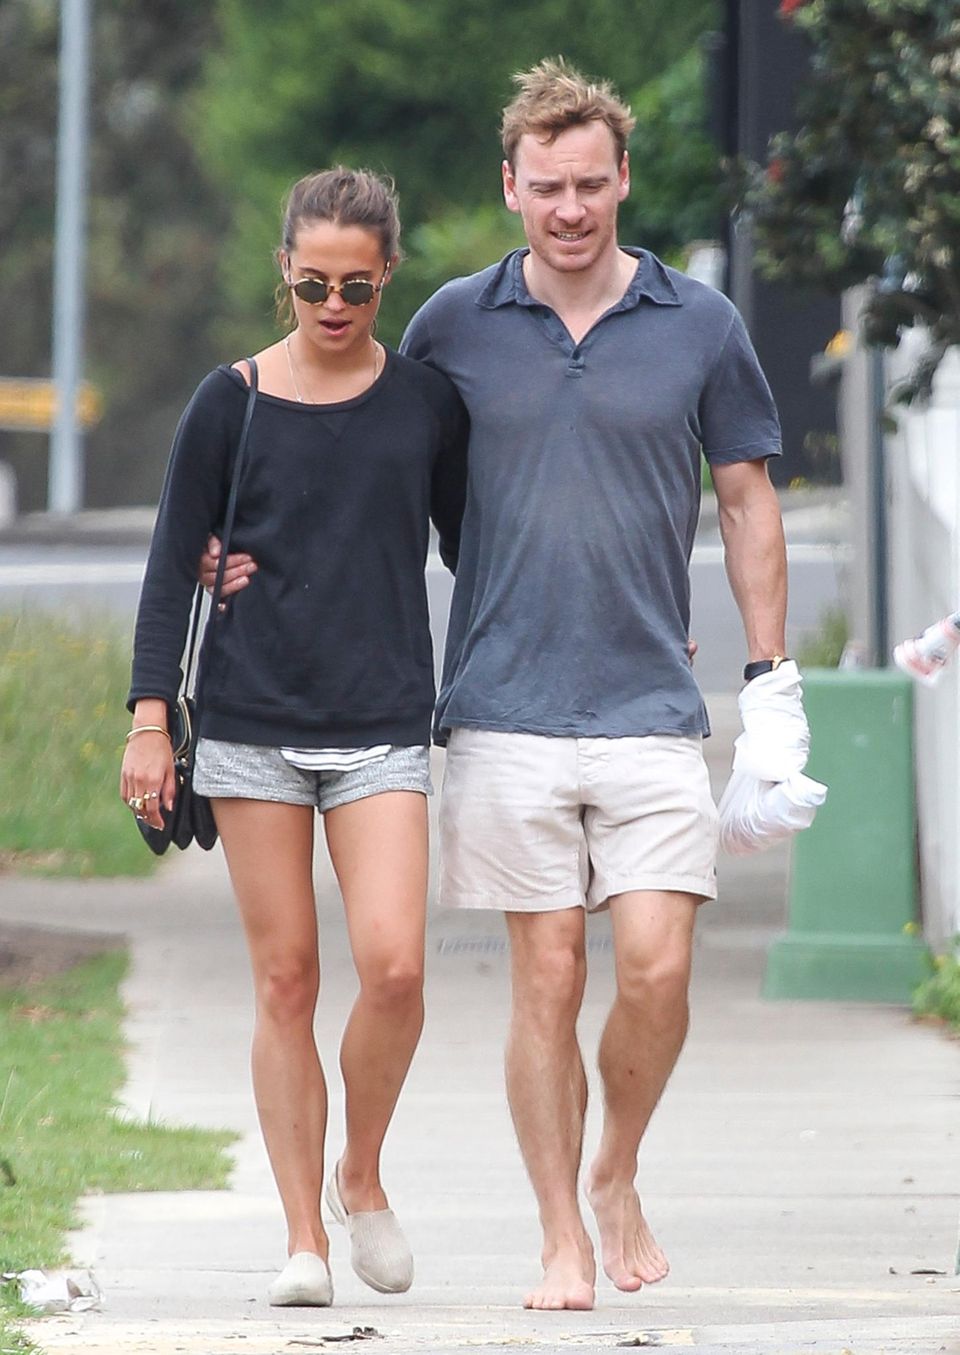 4. Dezember 2014: Michael Fassbender spaziert mit seiner neuen Freundin Alicia Vikander Arm in Arm durch Sydney.